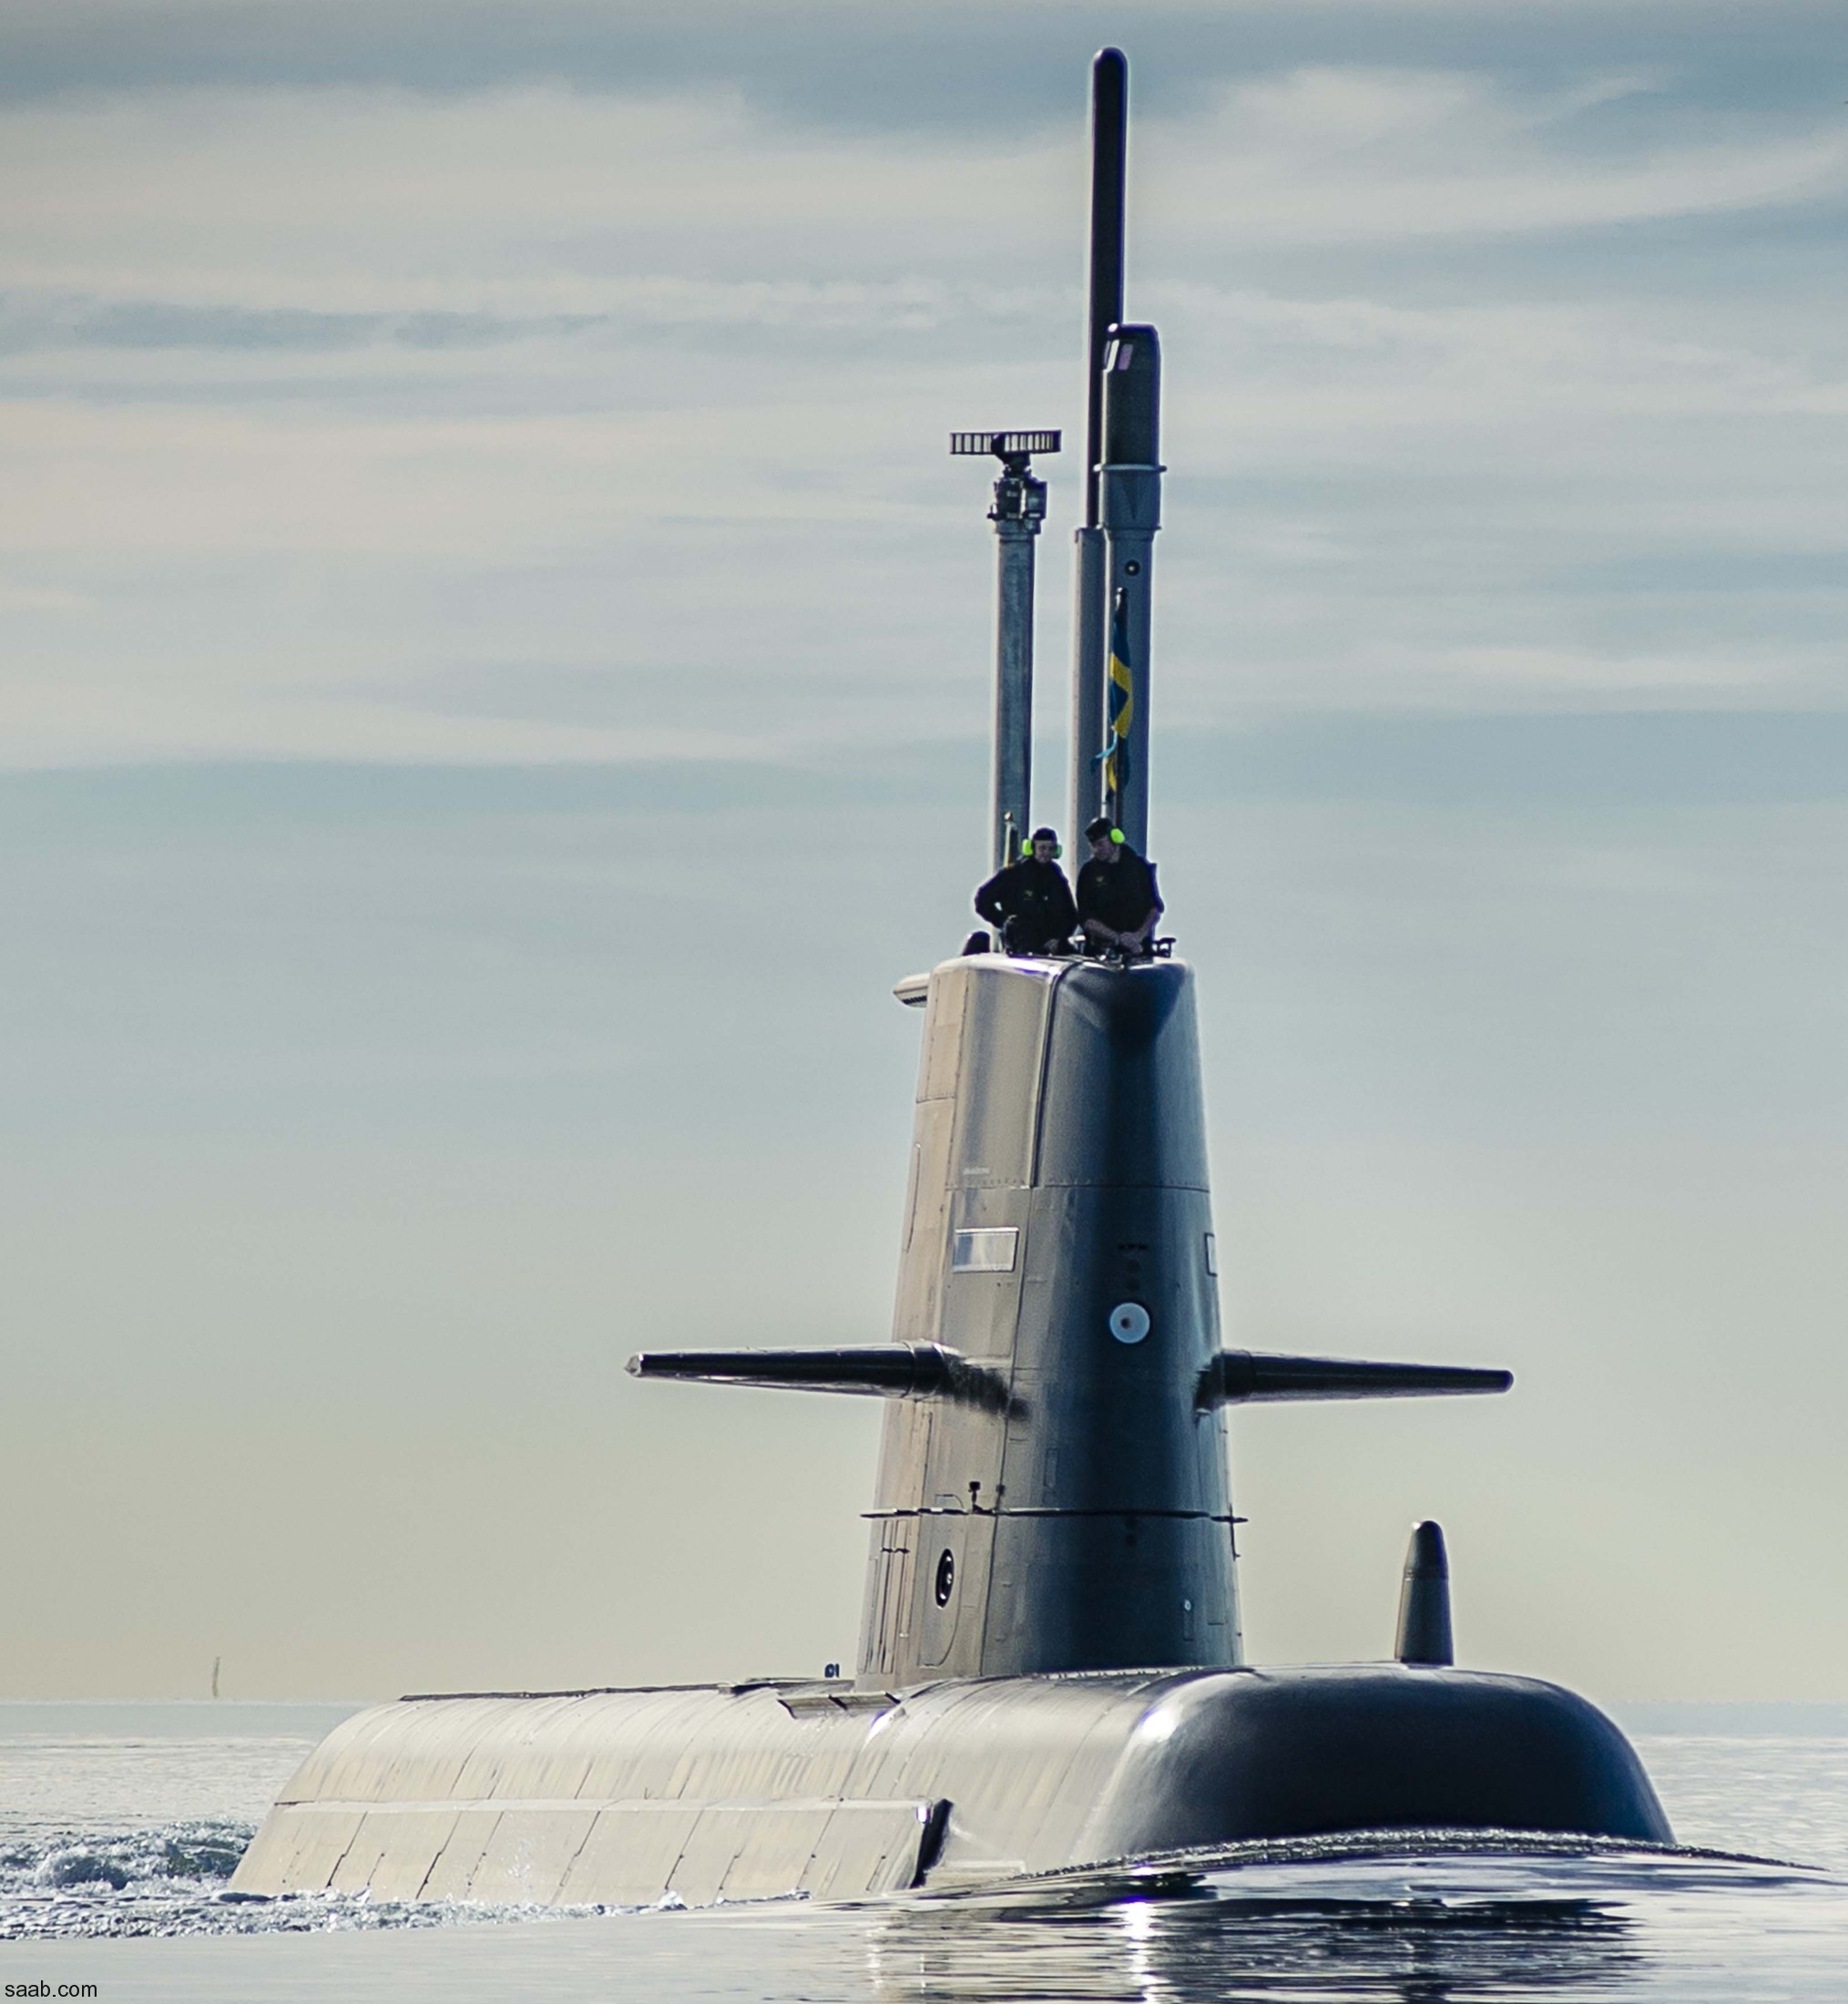 hswms hms gotland gtd class submarine ssk swedish navy svenska marinen försvarsmakten kockums 16